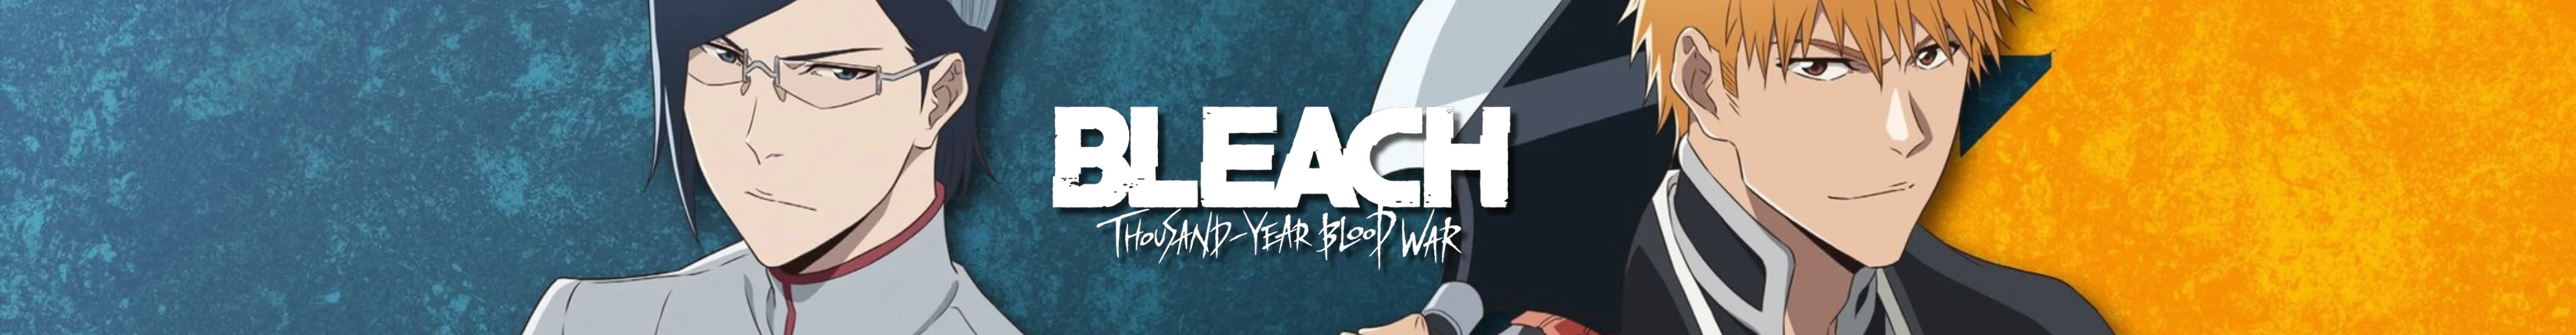 Bleach figures banner